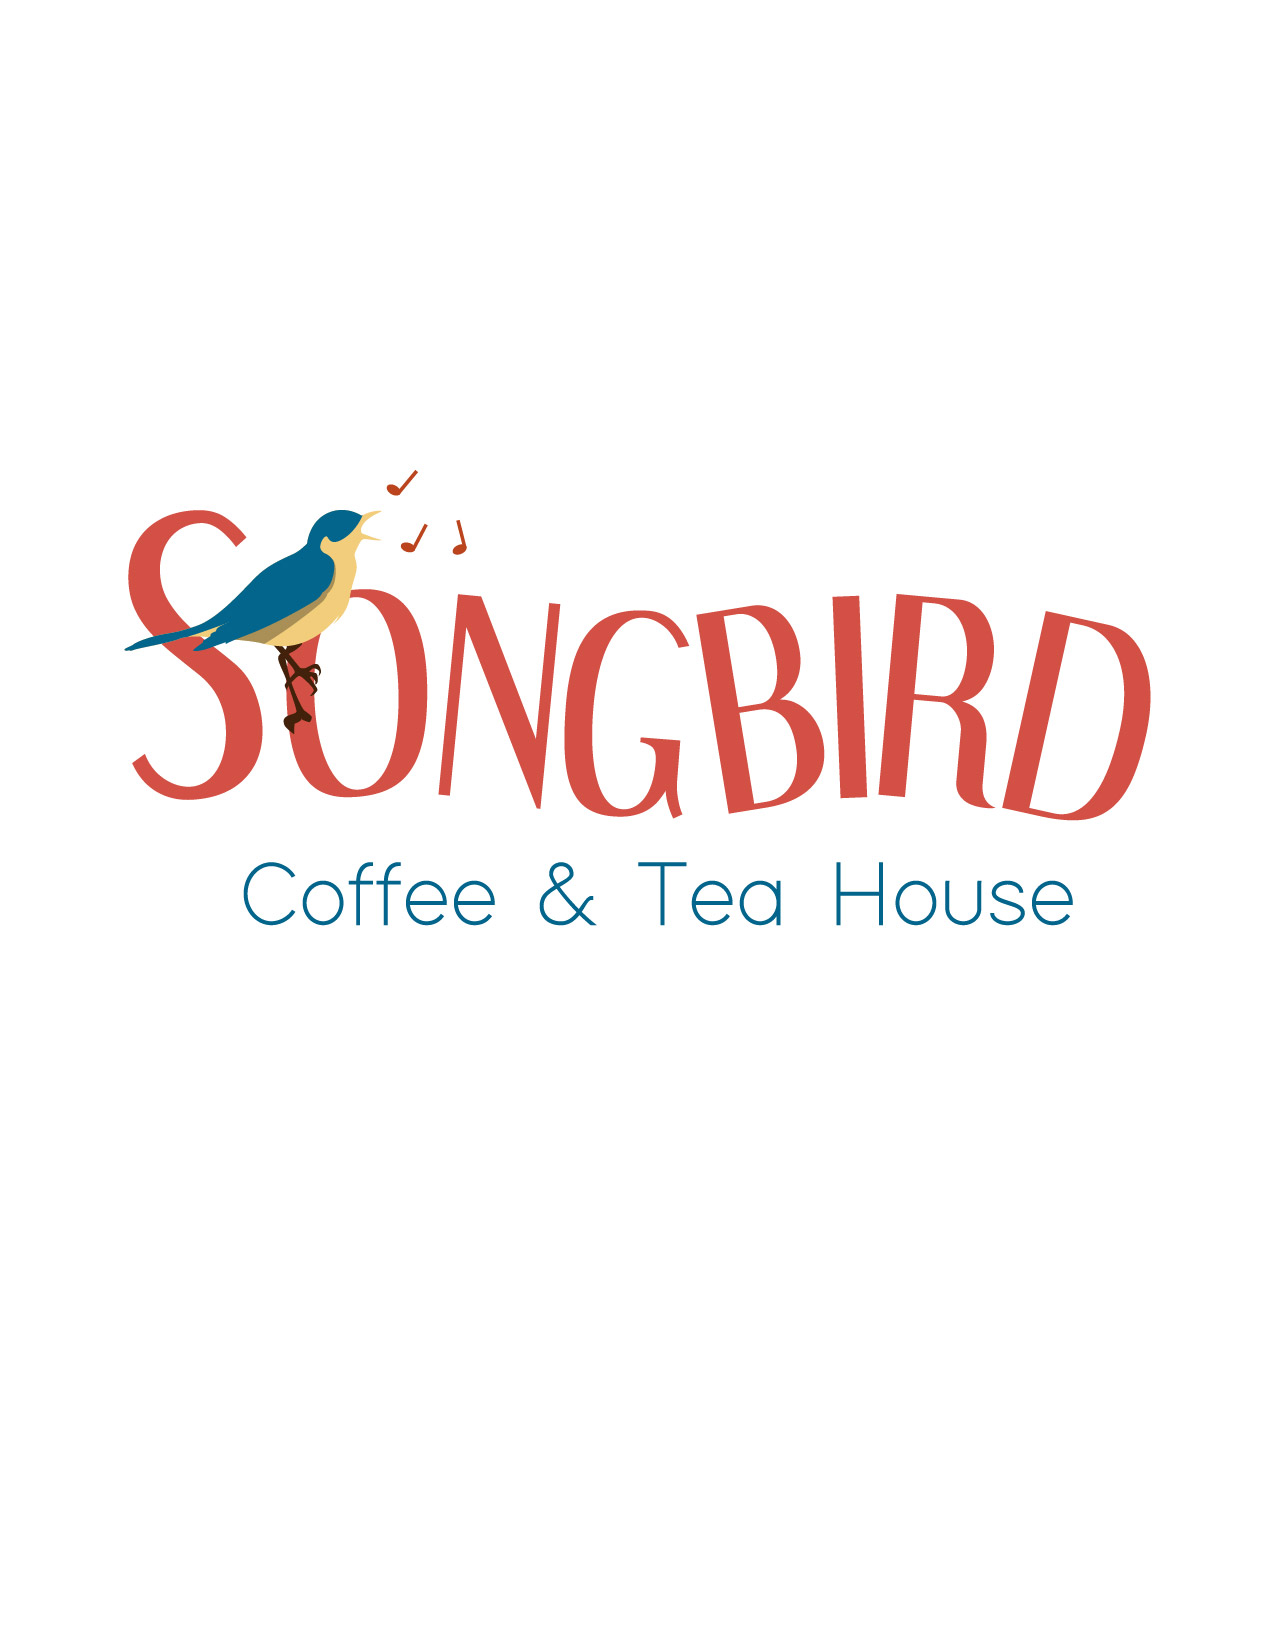 Songbird Coffee & Tea House Final Logo